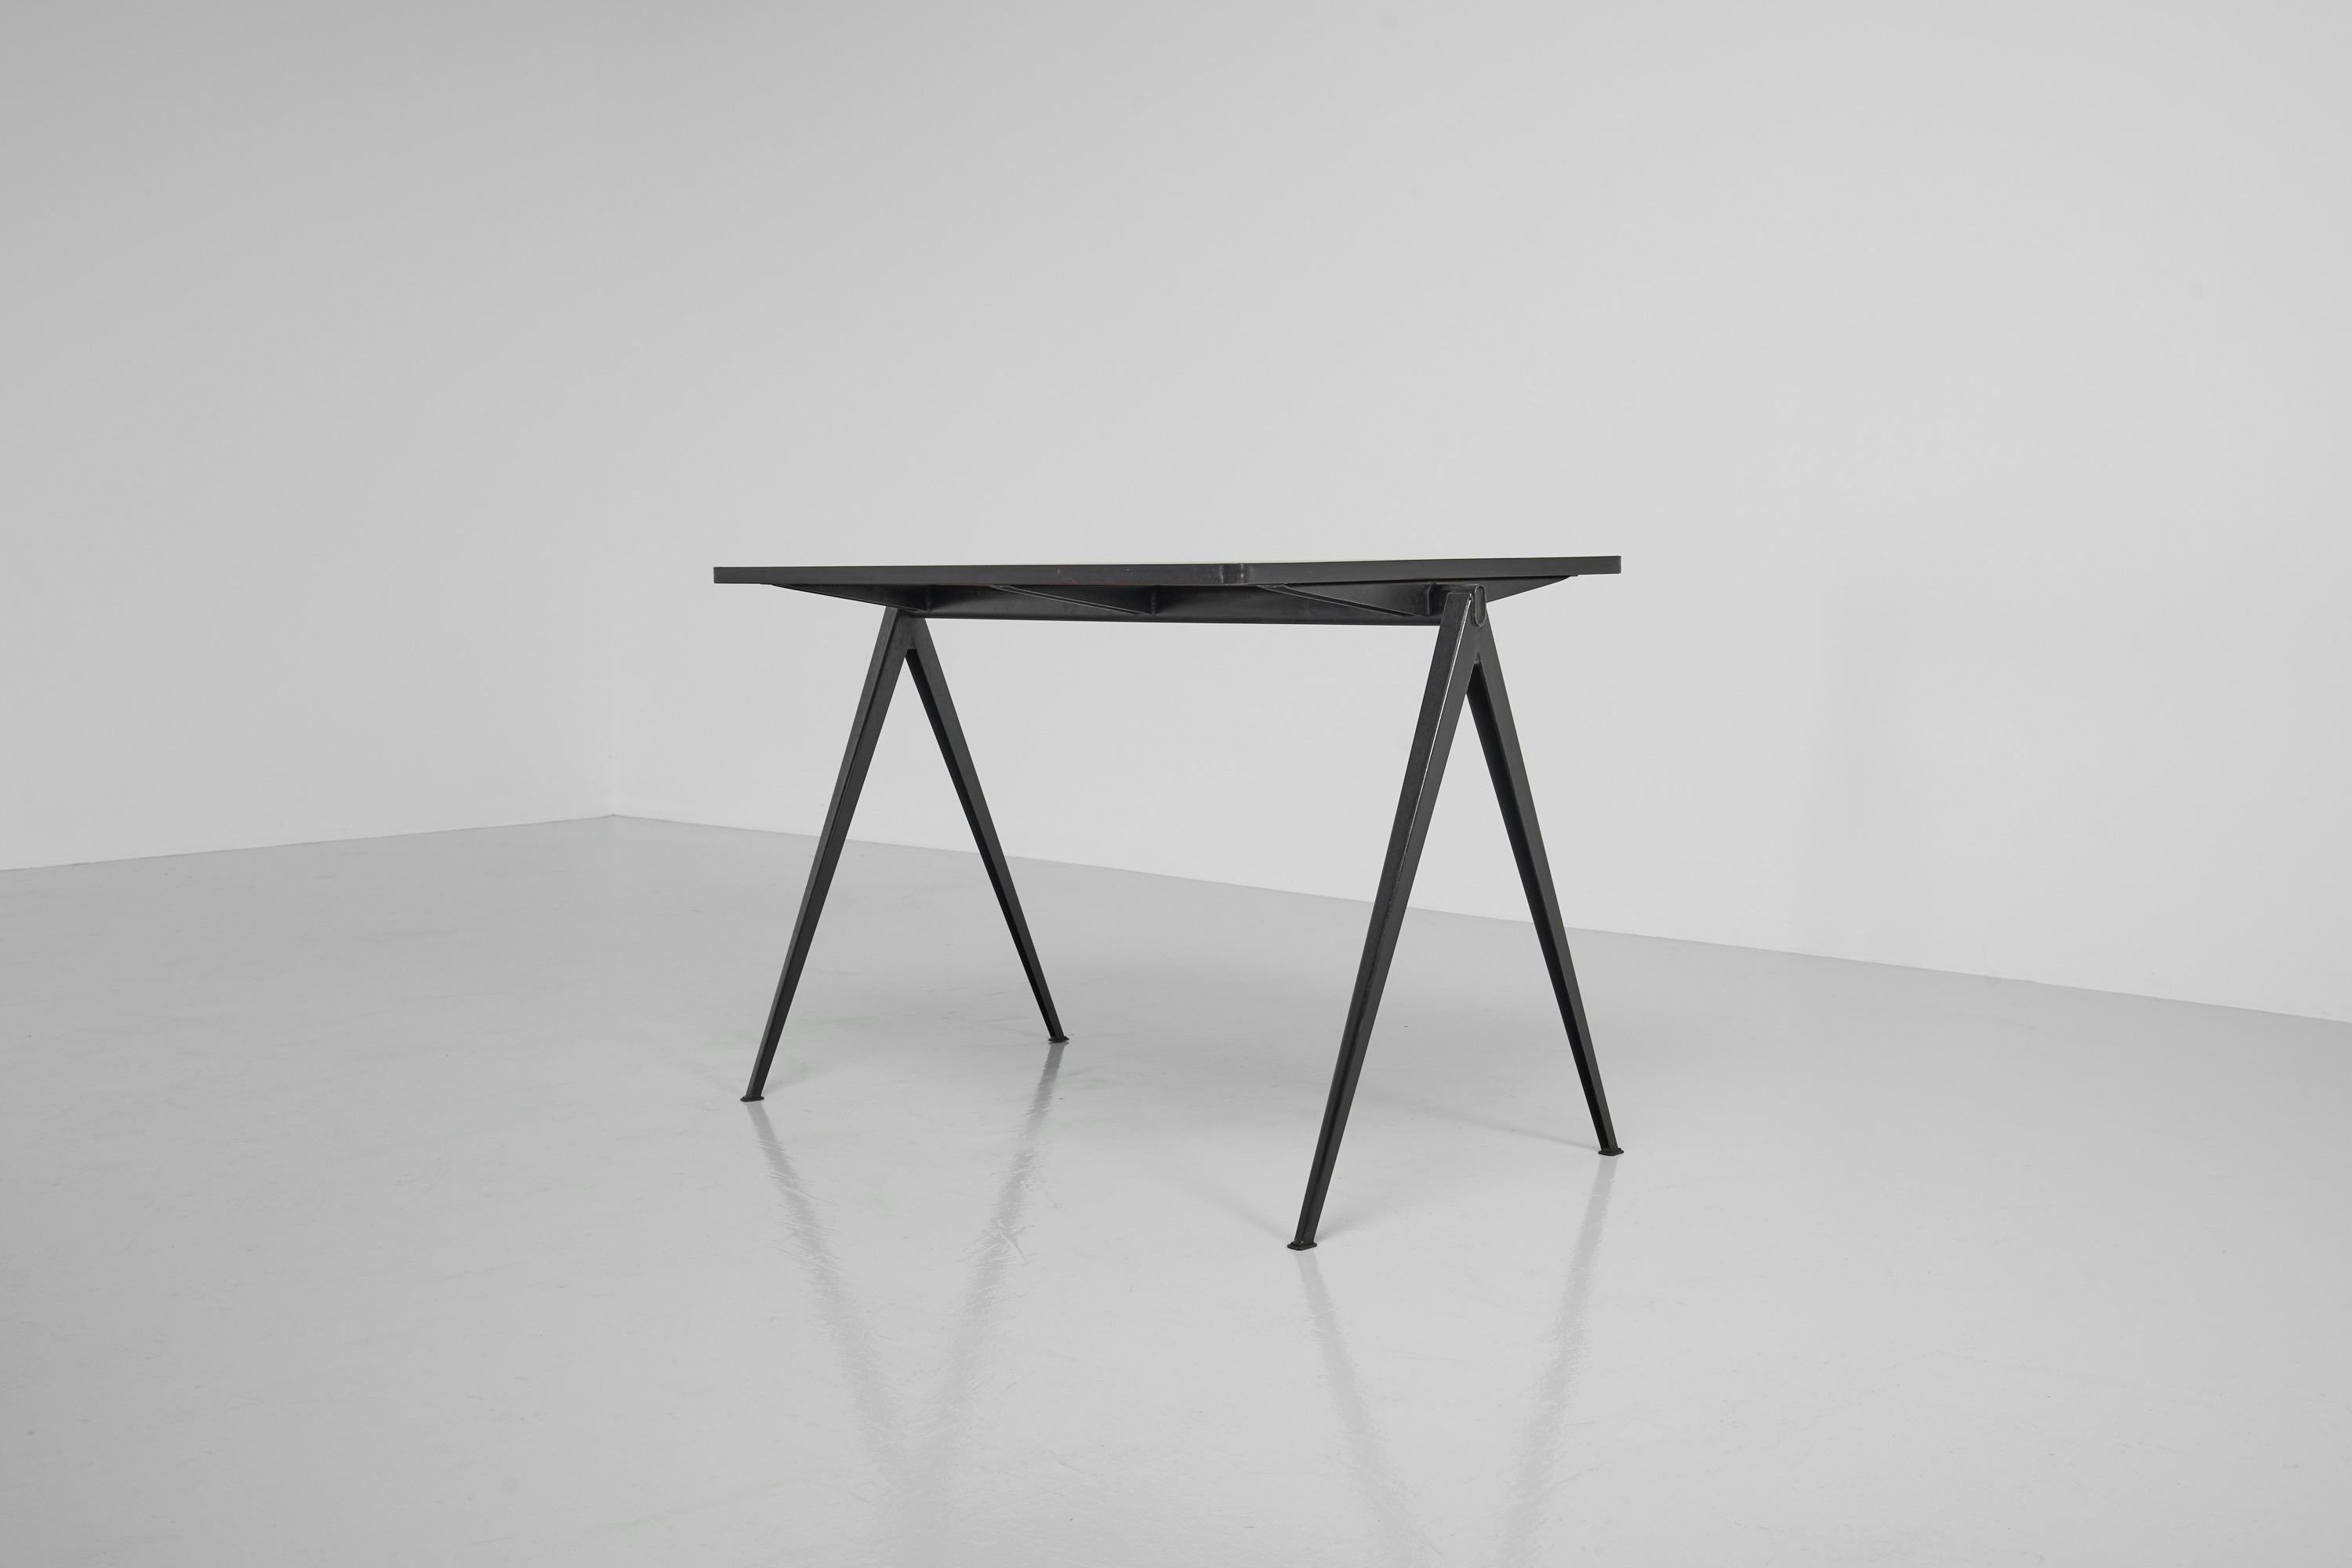 Minimalistischer und industriell gestalteter kleiner 'Pyramid'-Tisch, entworfen von Wim Rietveld und hergestellt von Ahrend de Cirkel, Niederlande 1960. Er hat eine fantastisch geformte Struktur, einen V-förmigen Rahmen aus schwarz lackiertem